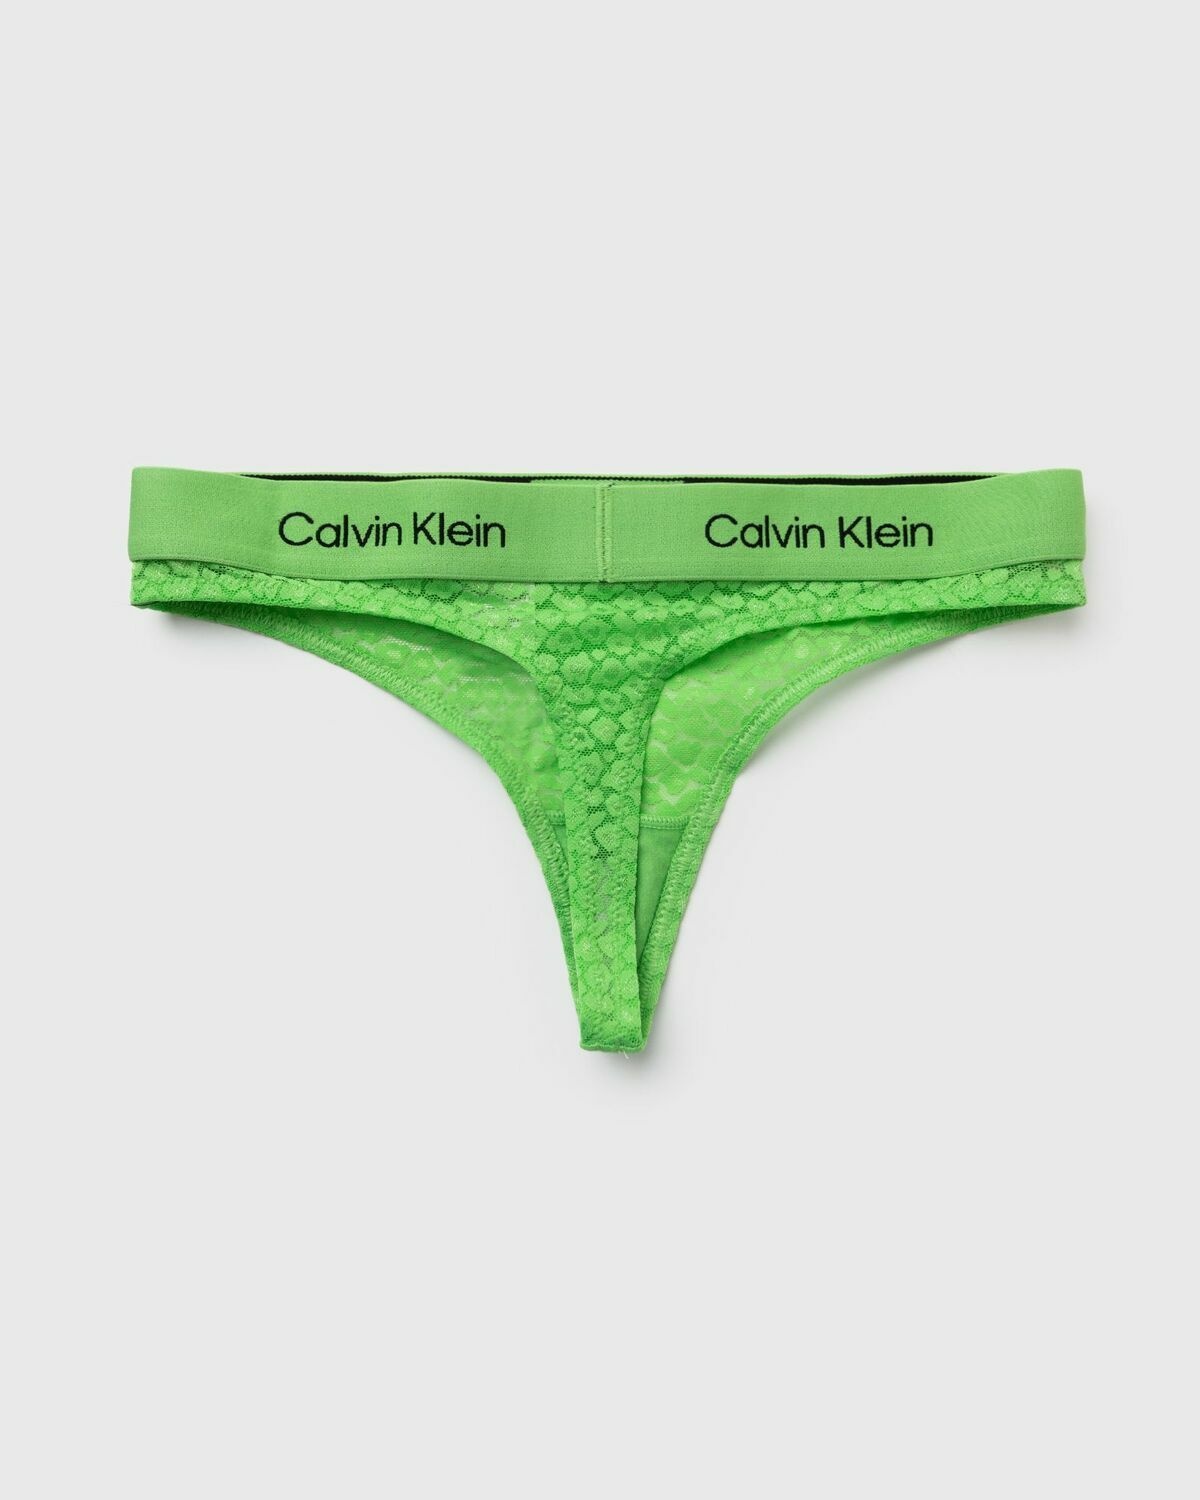 Women's swimwear bottoms green Calvin Klein Underwear